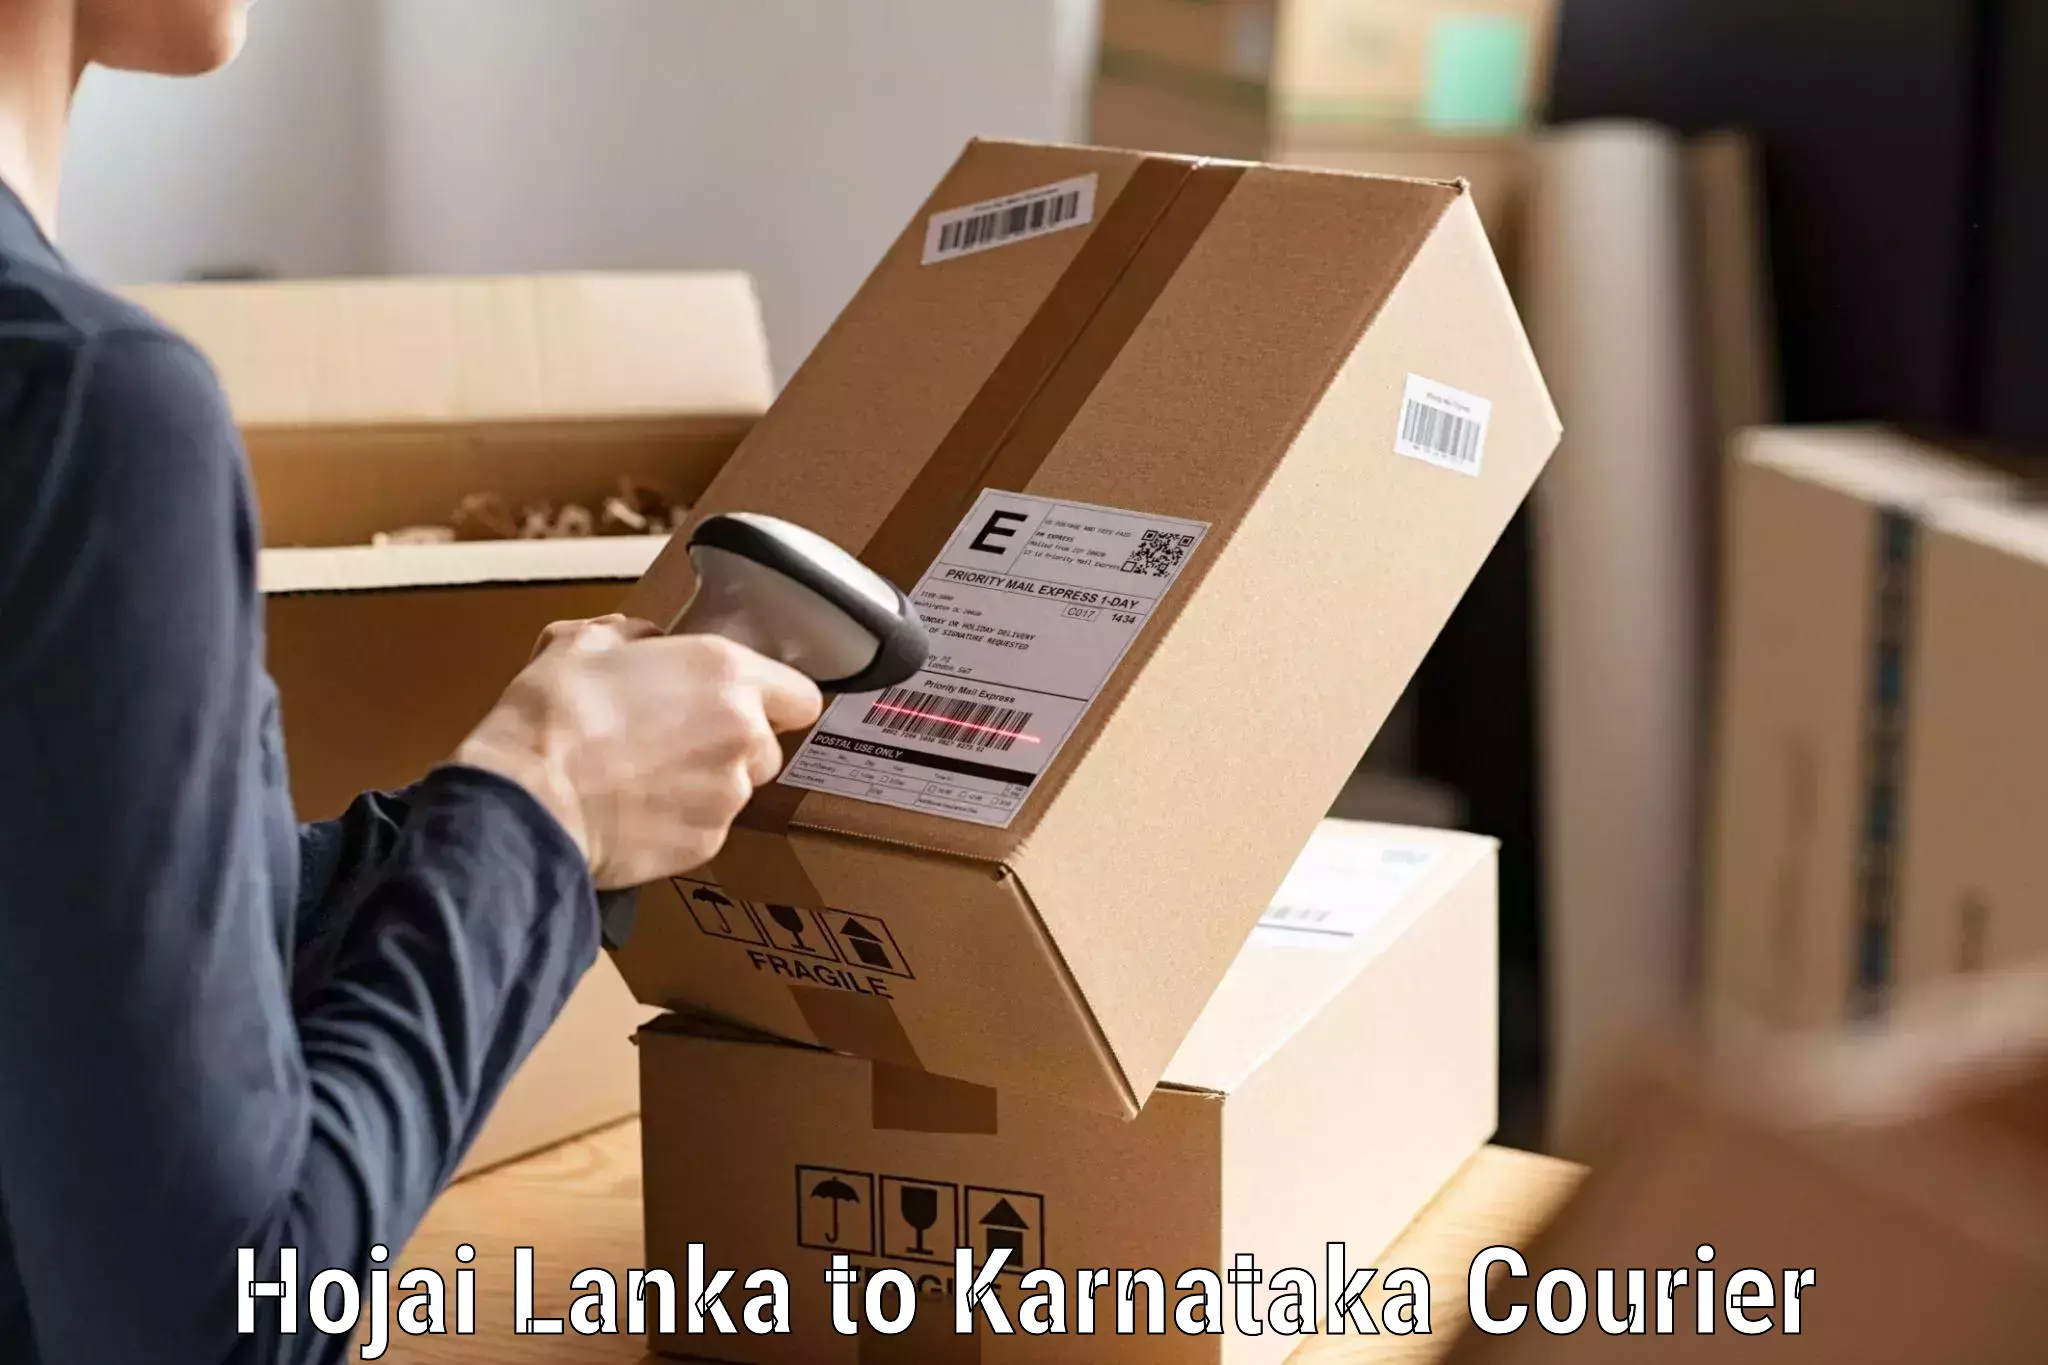 Express courier capabilities Hojai Lanka to Srinivaspur